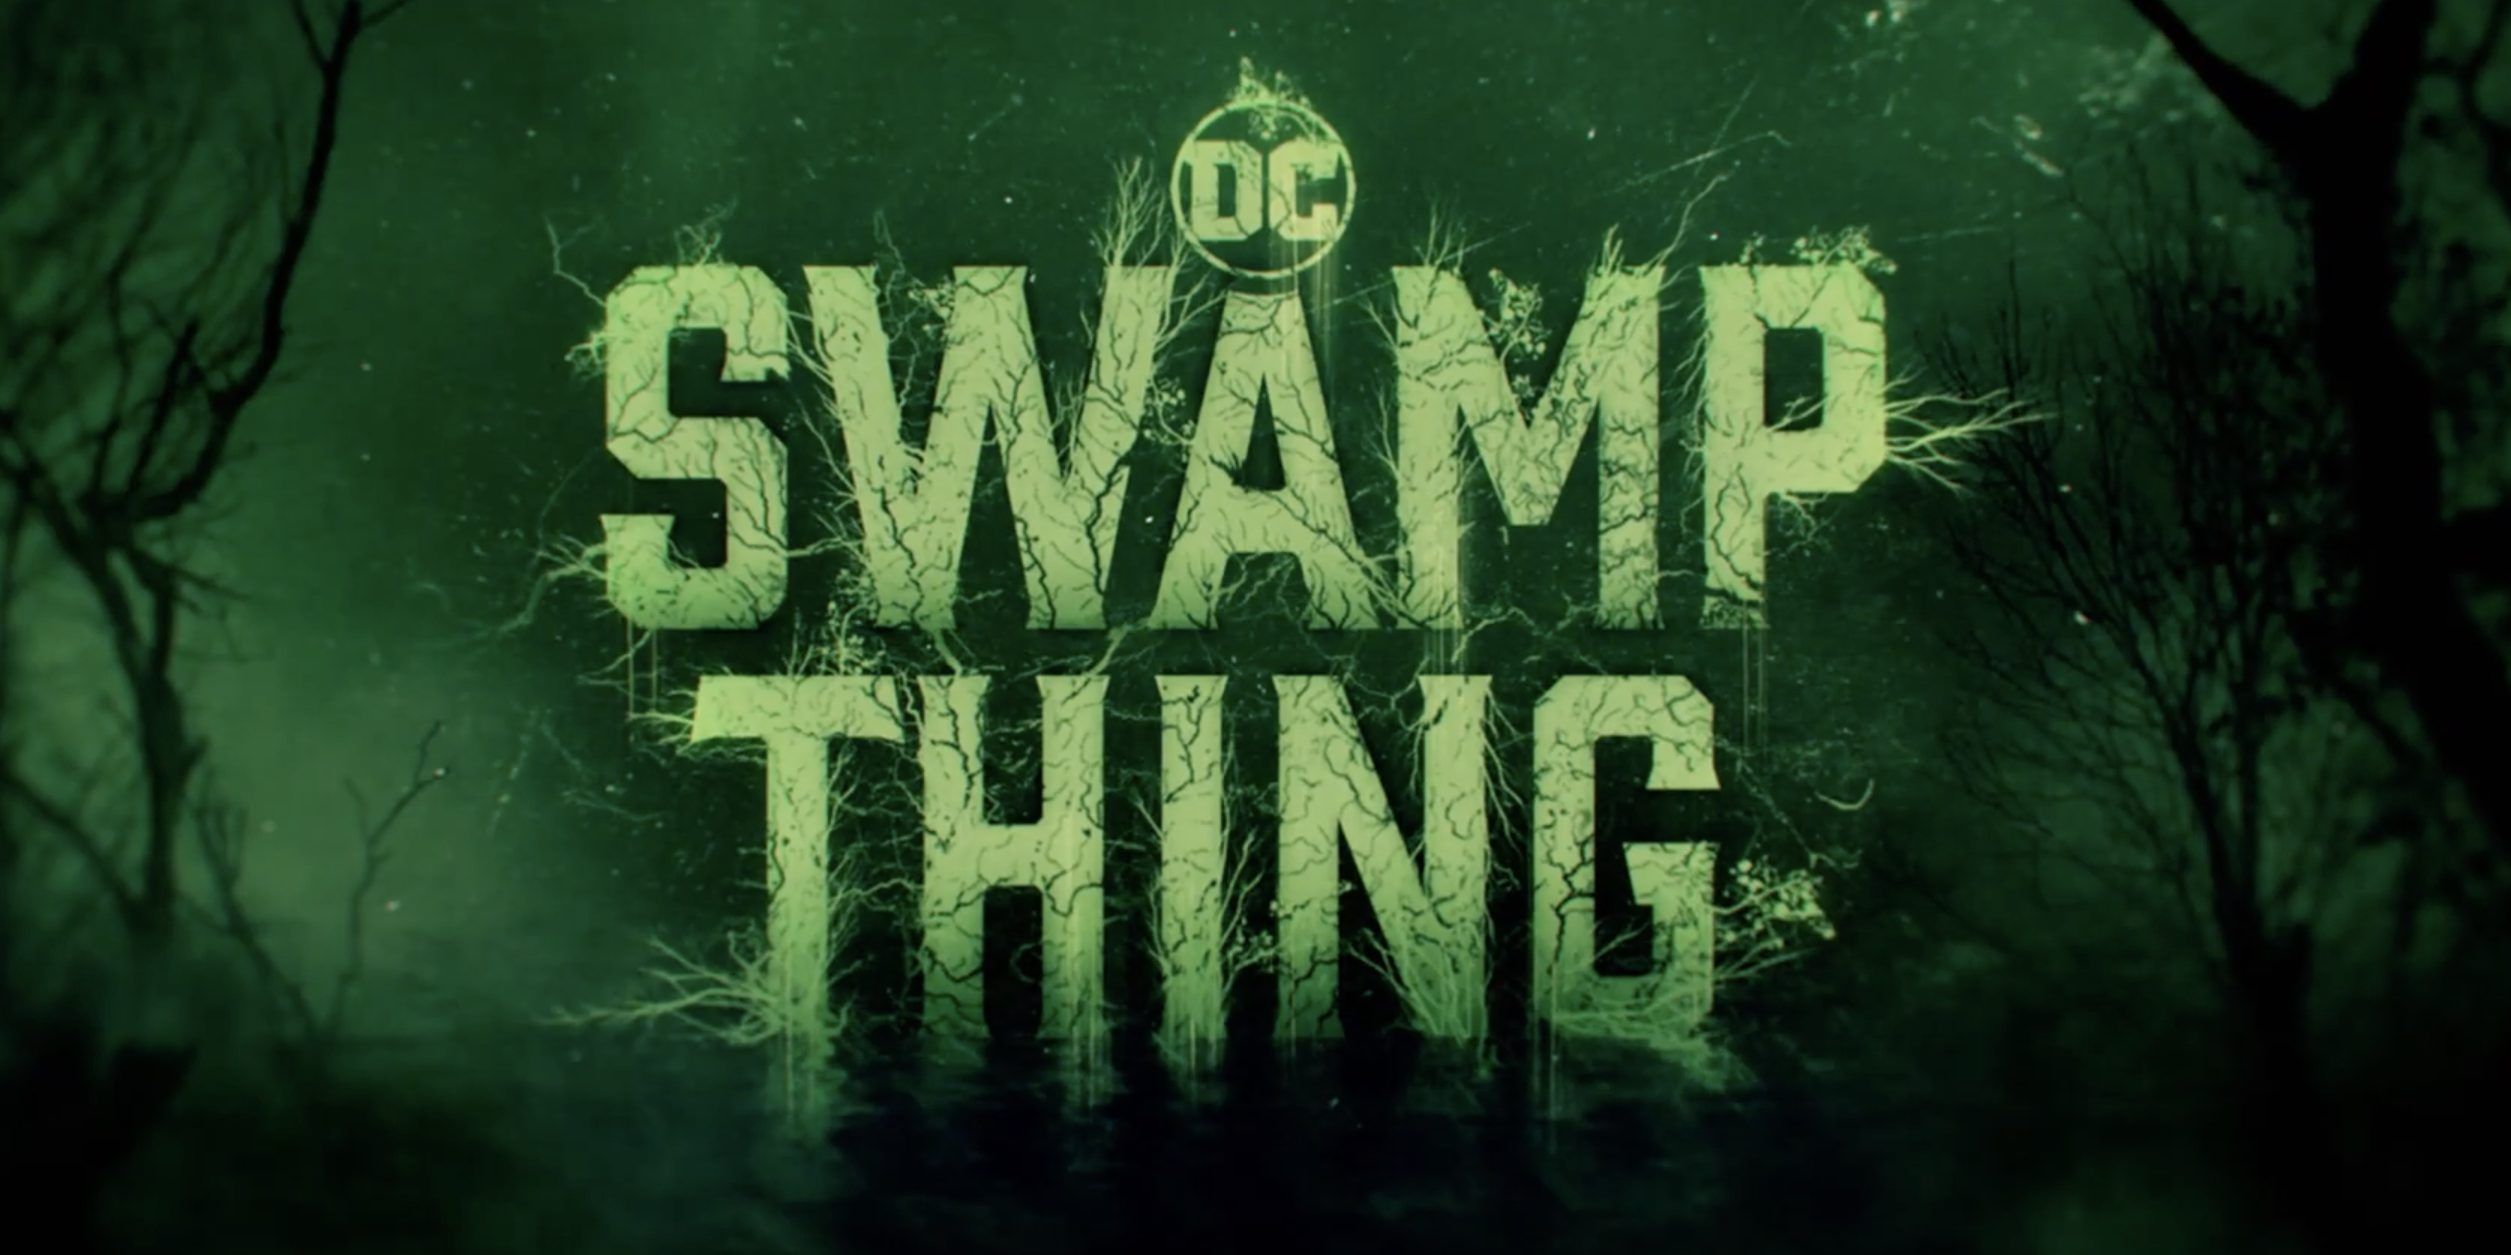 Swamp Thing Trailer